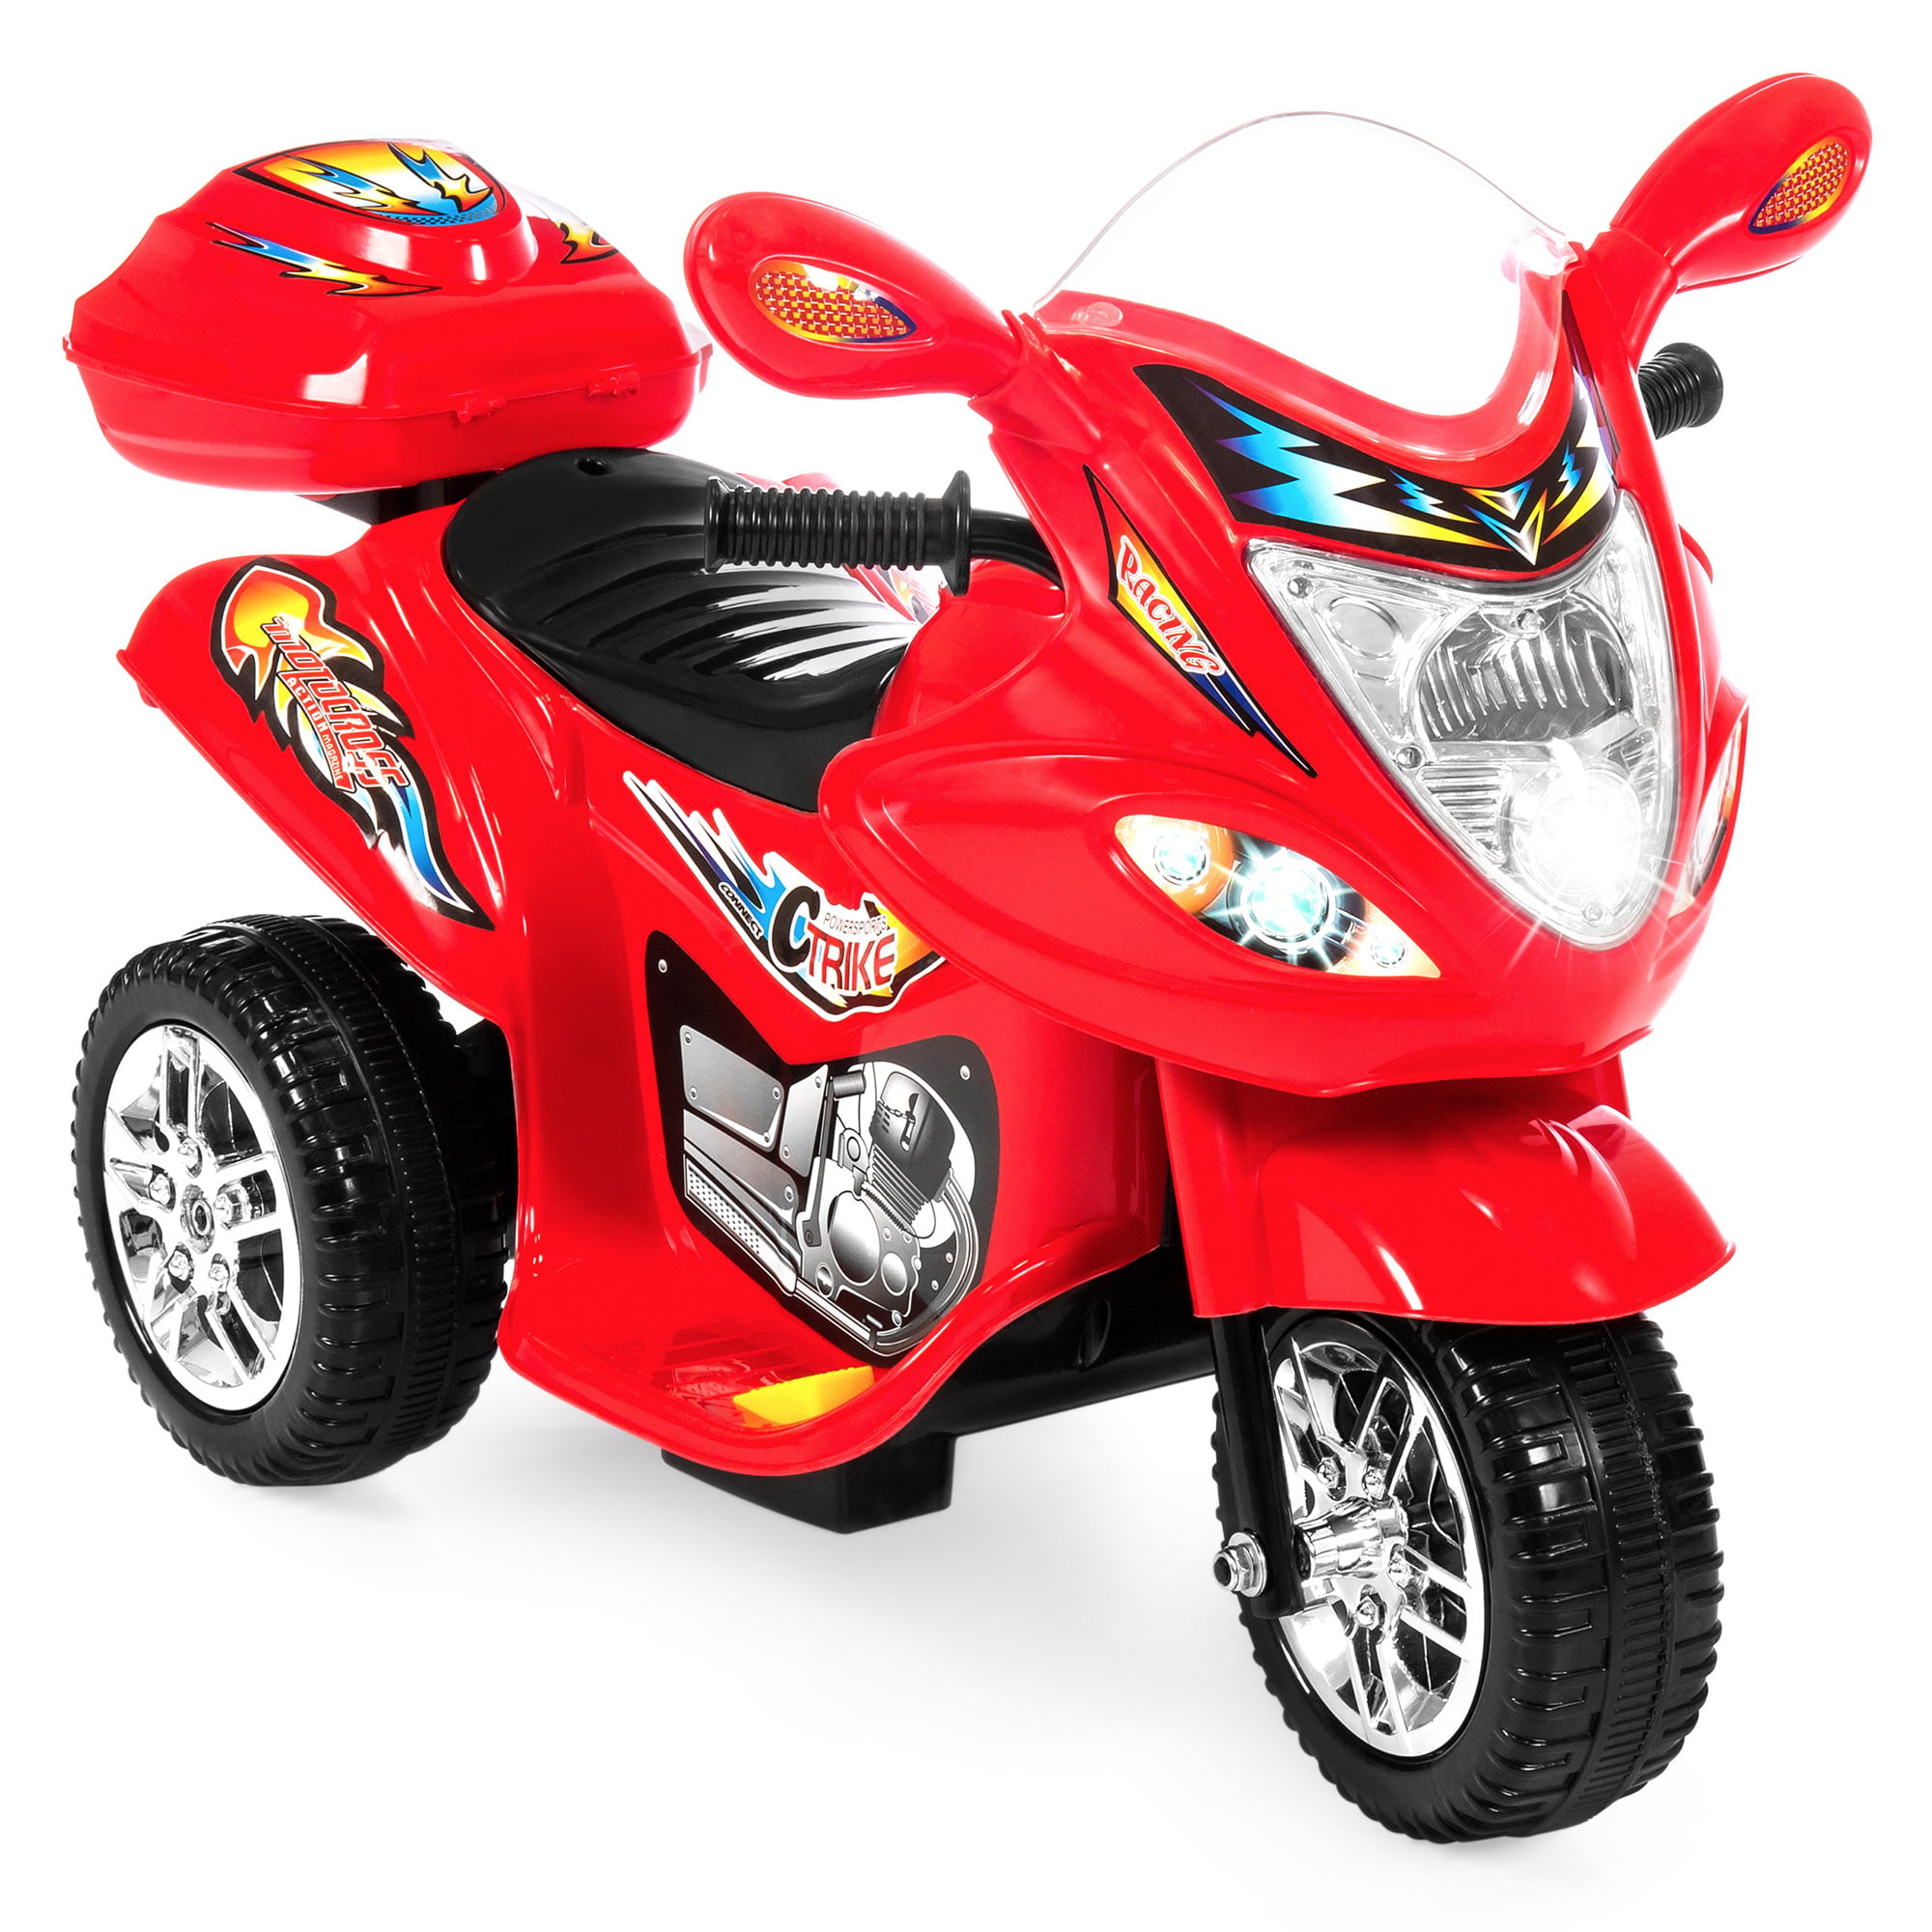 children's toy motorbikes